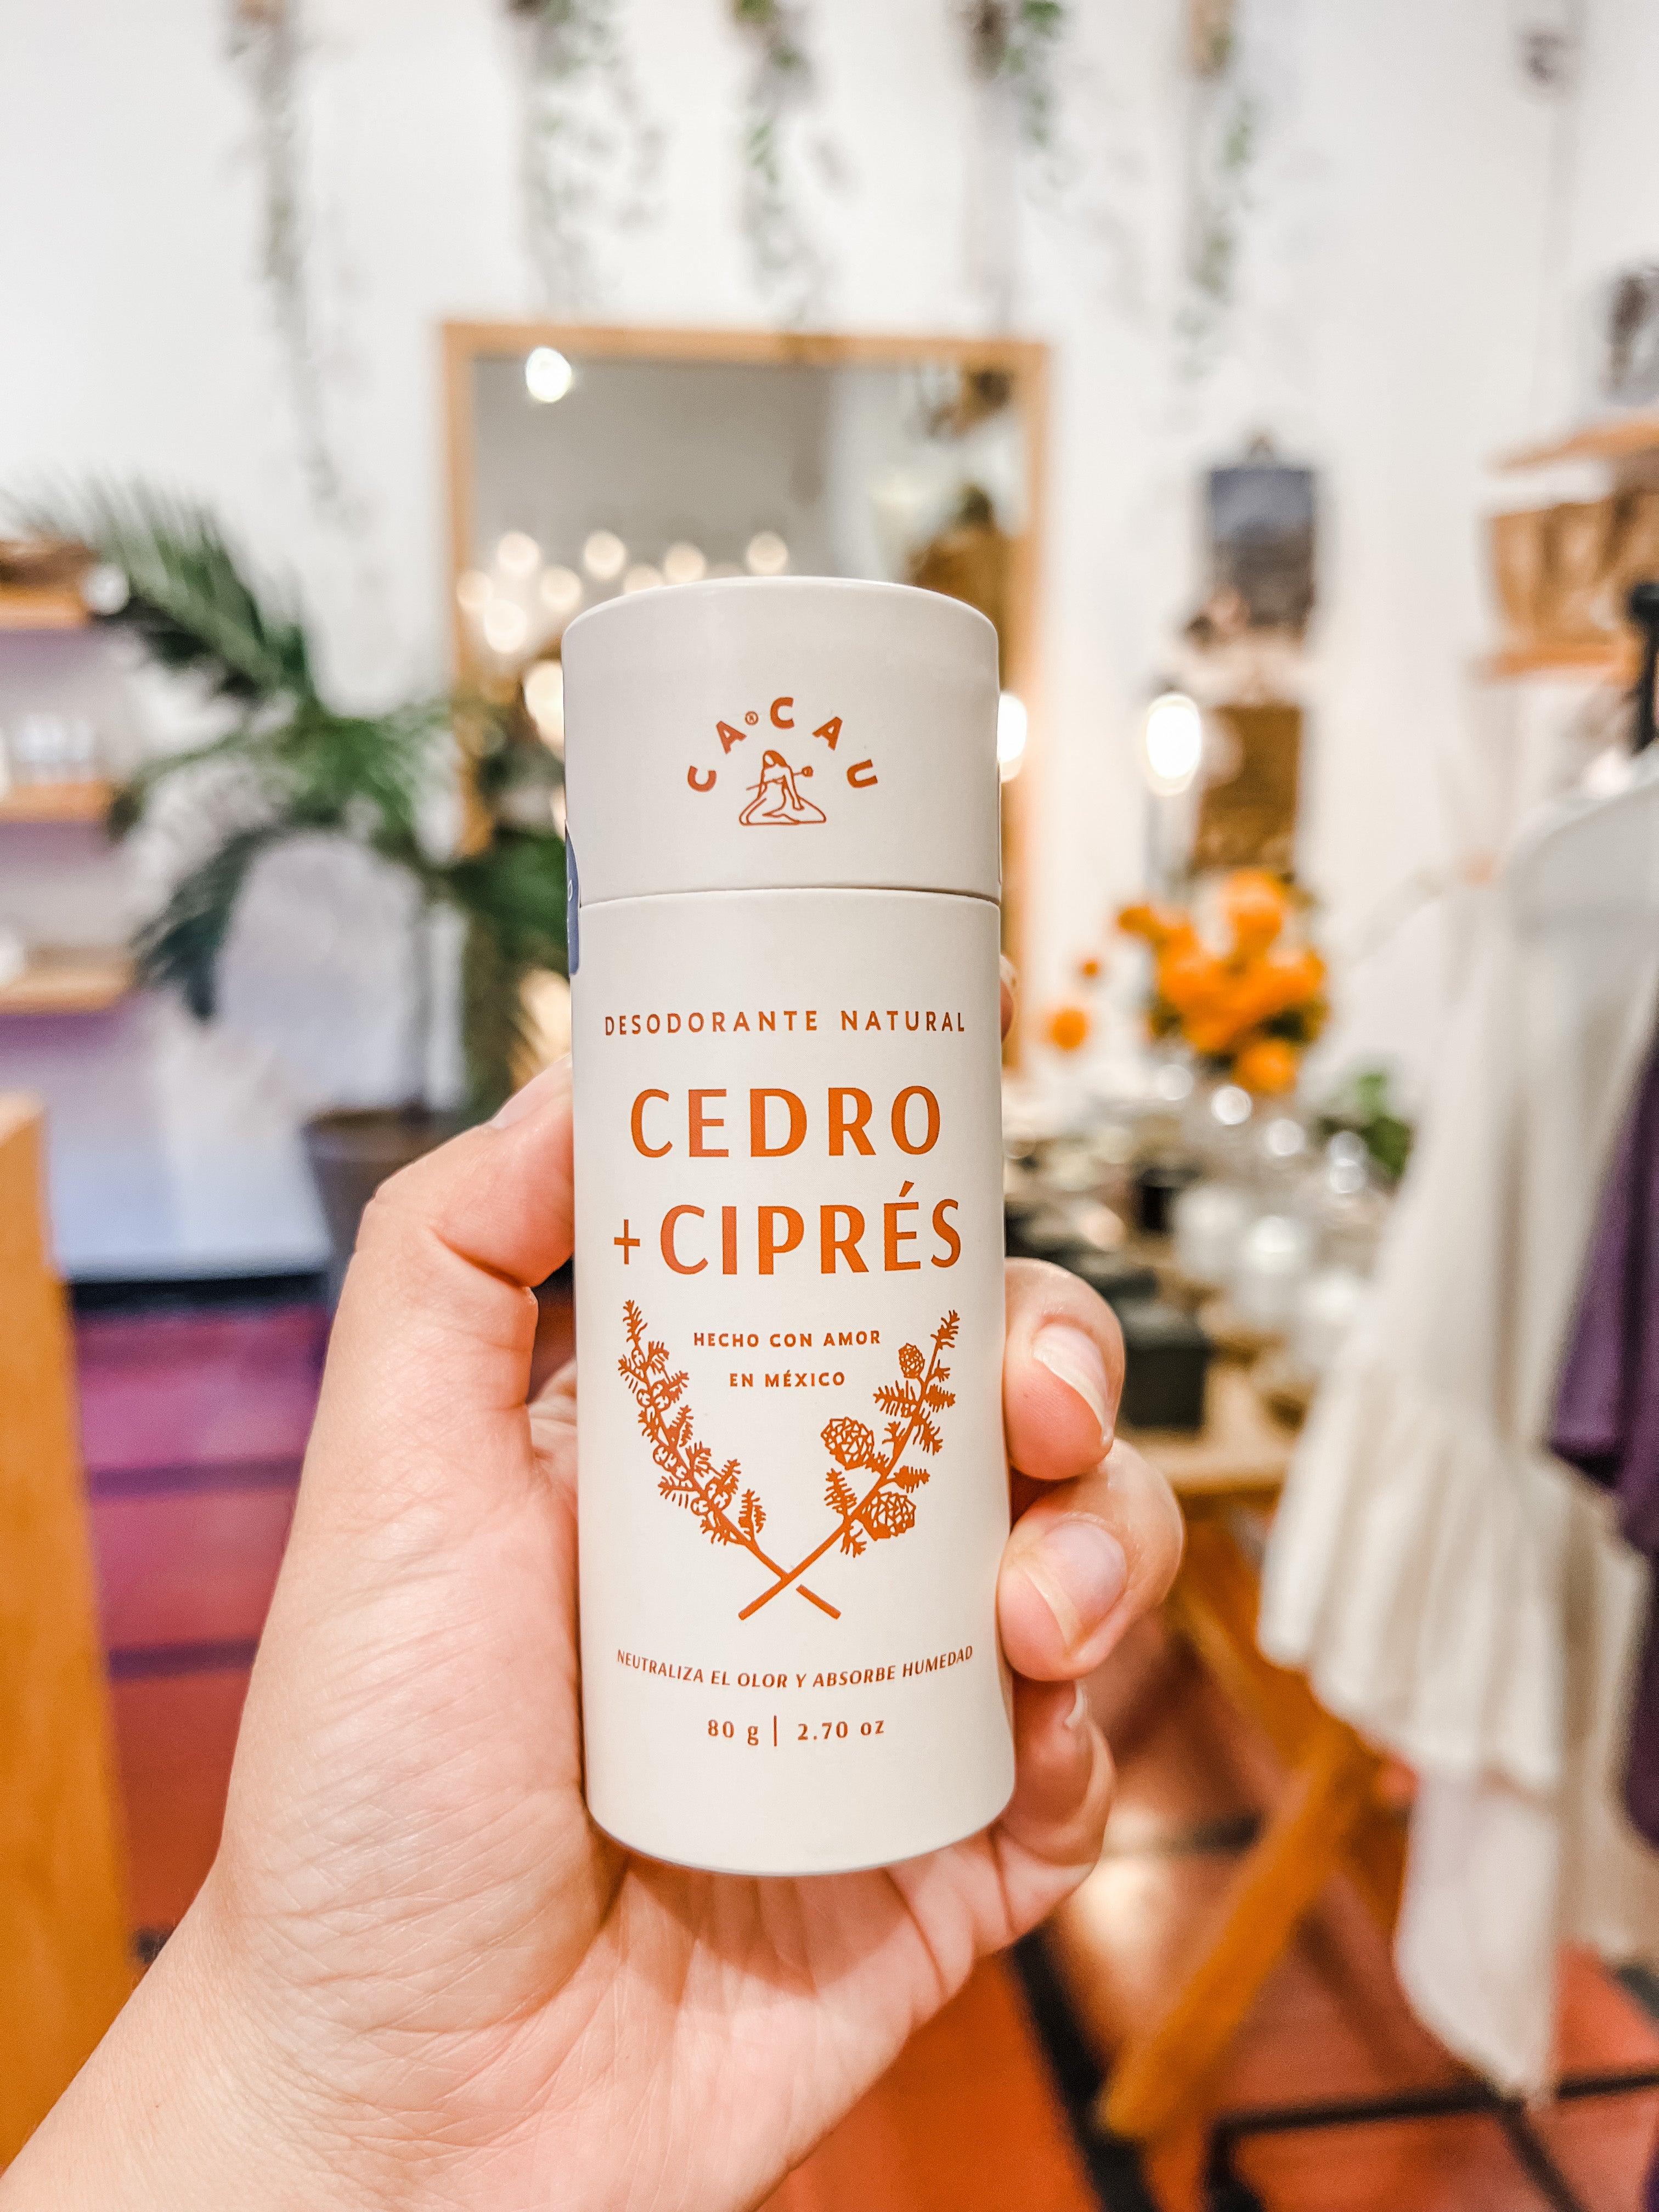 Cedro + Ciprés Desodorante